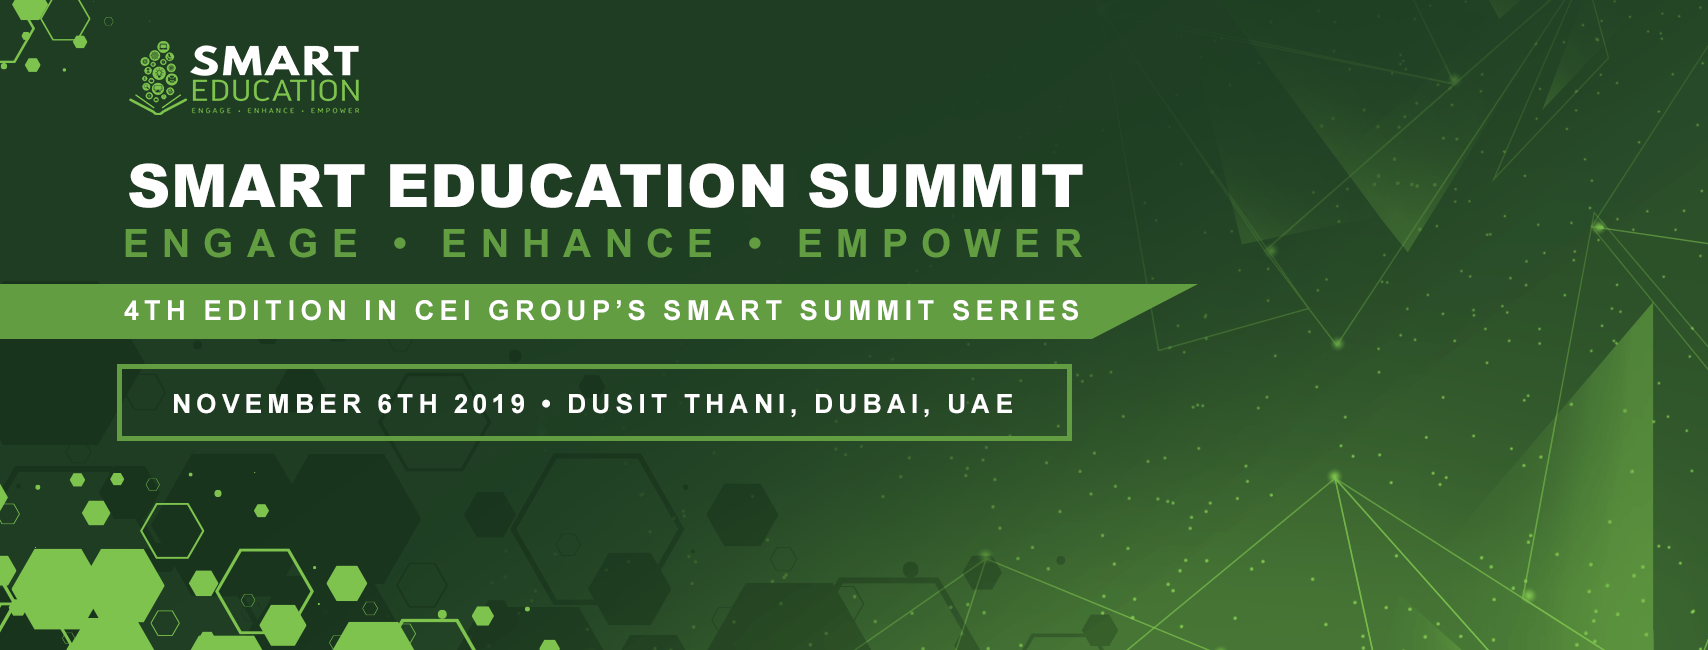 Smart Education Summit 2019 - Coming Soon in UAE